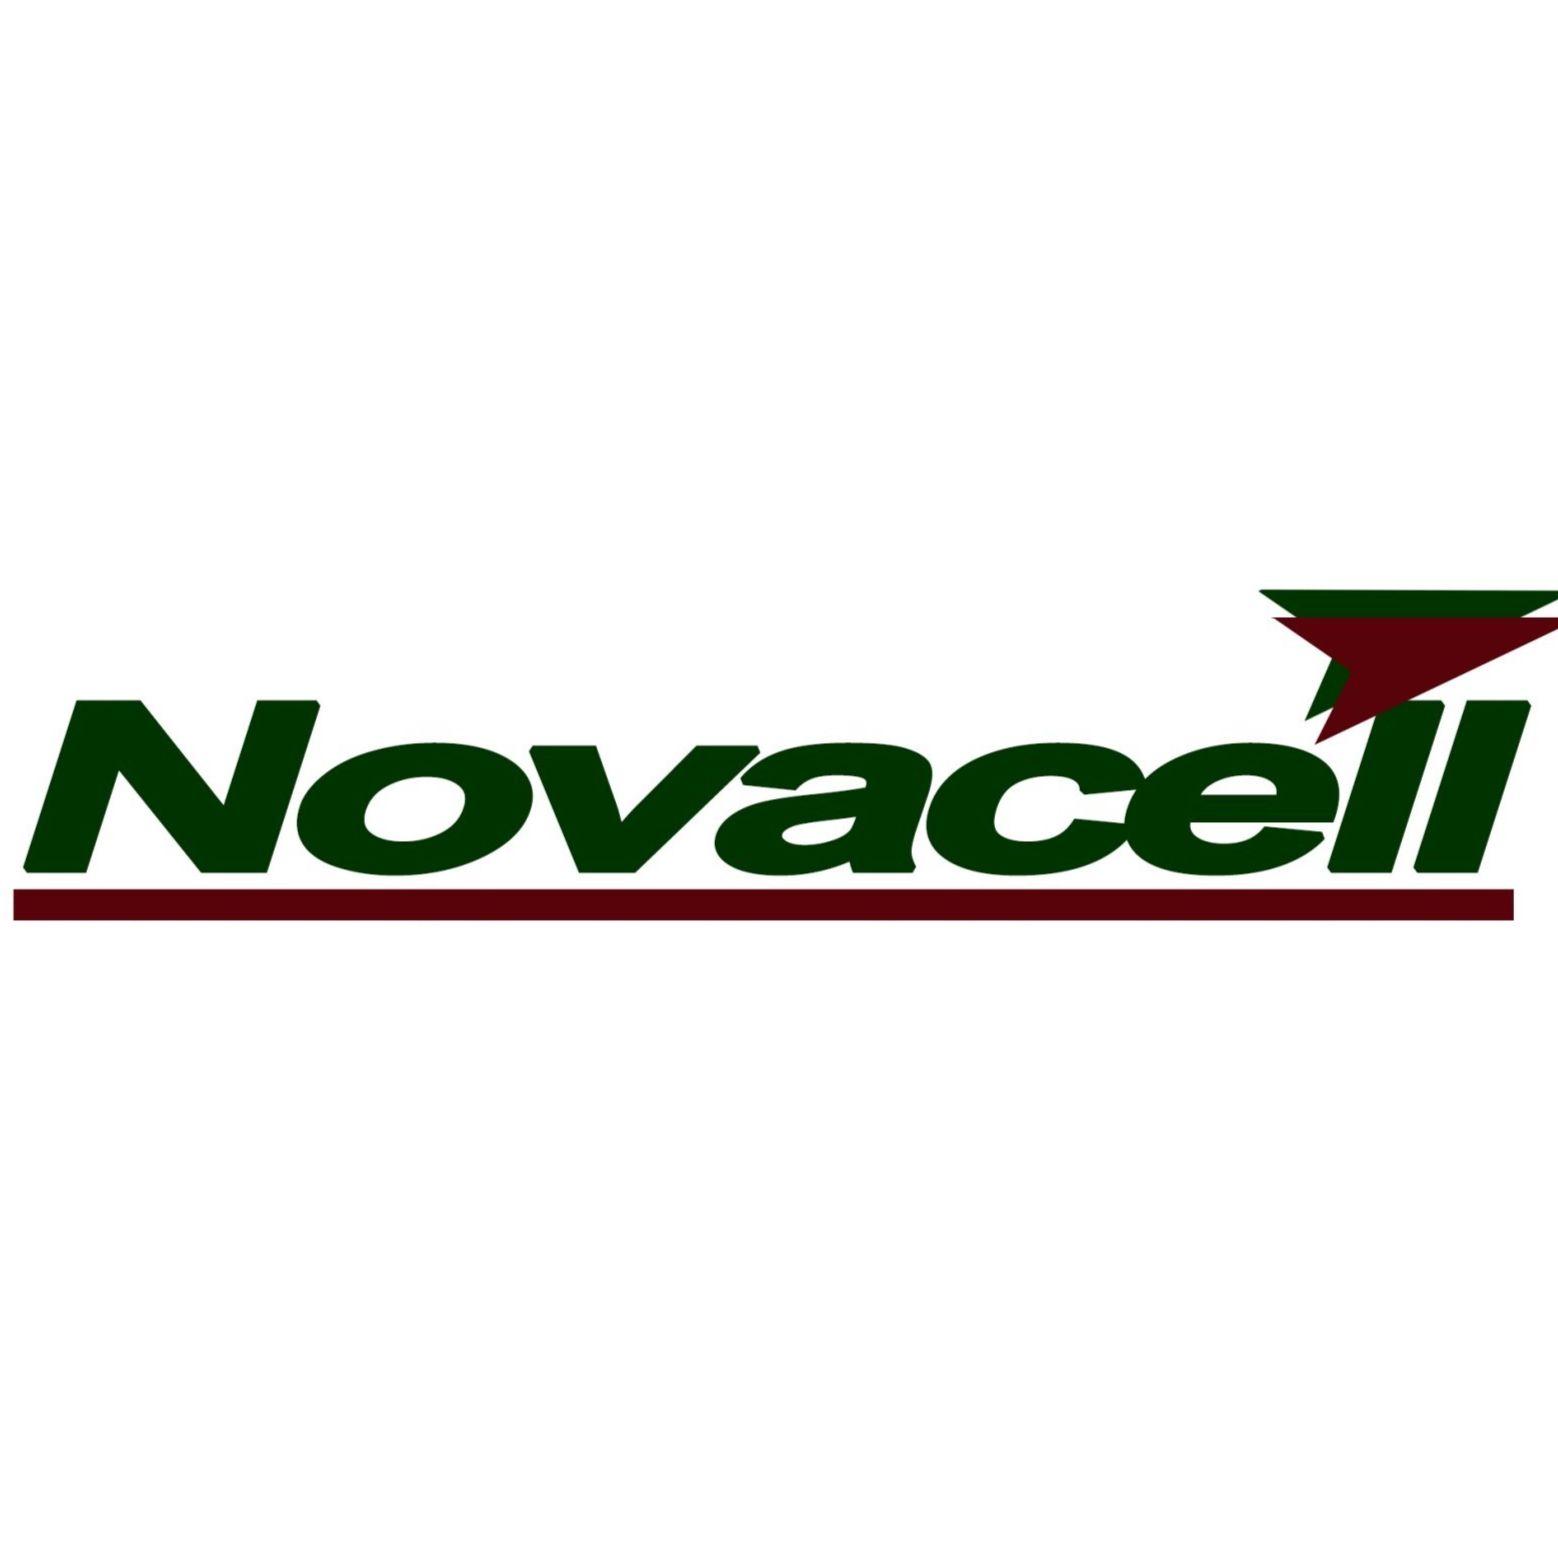 Novacell Telecom Corporation